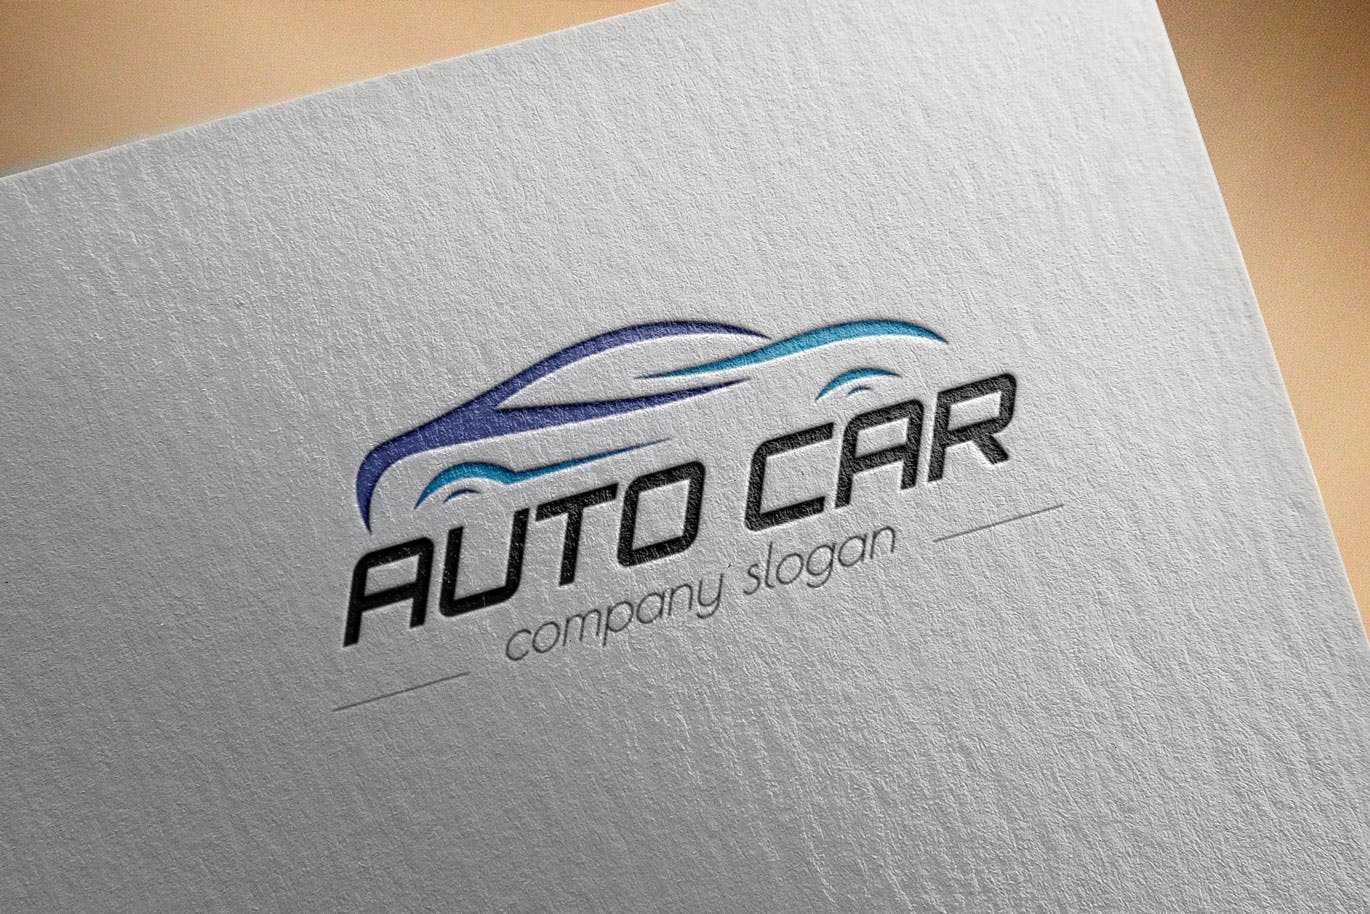 汽车相关企业品牌Logo设计非凡图库精选模板 Auto Car Business Logo Template插图(2)